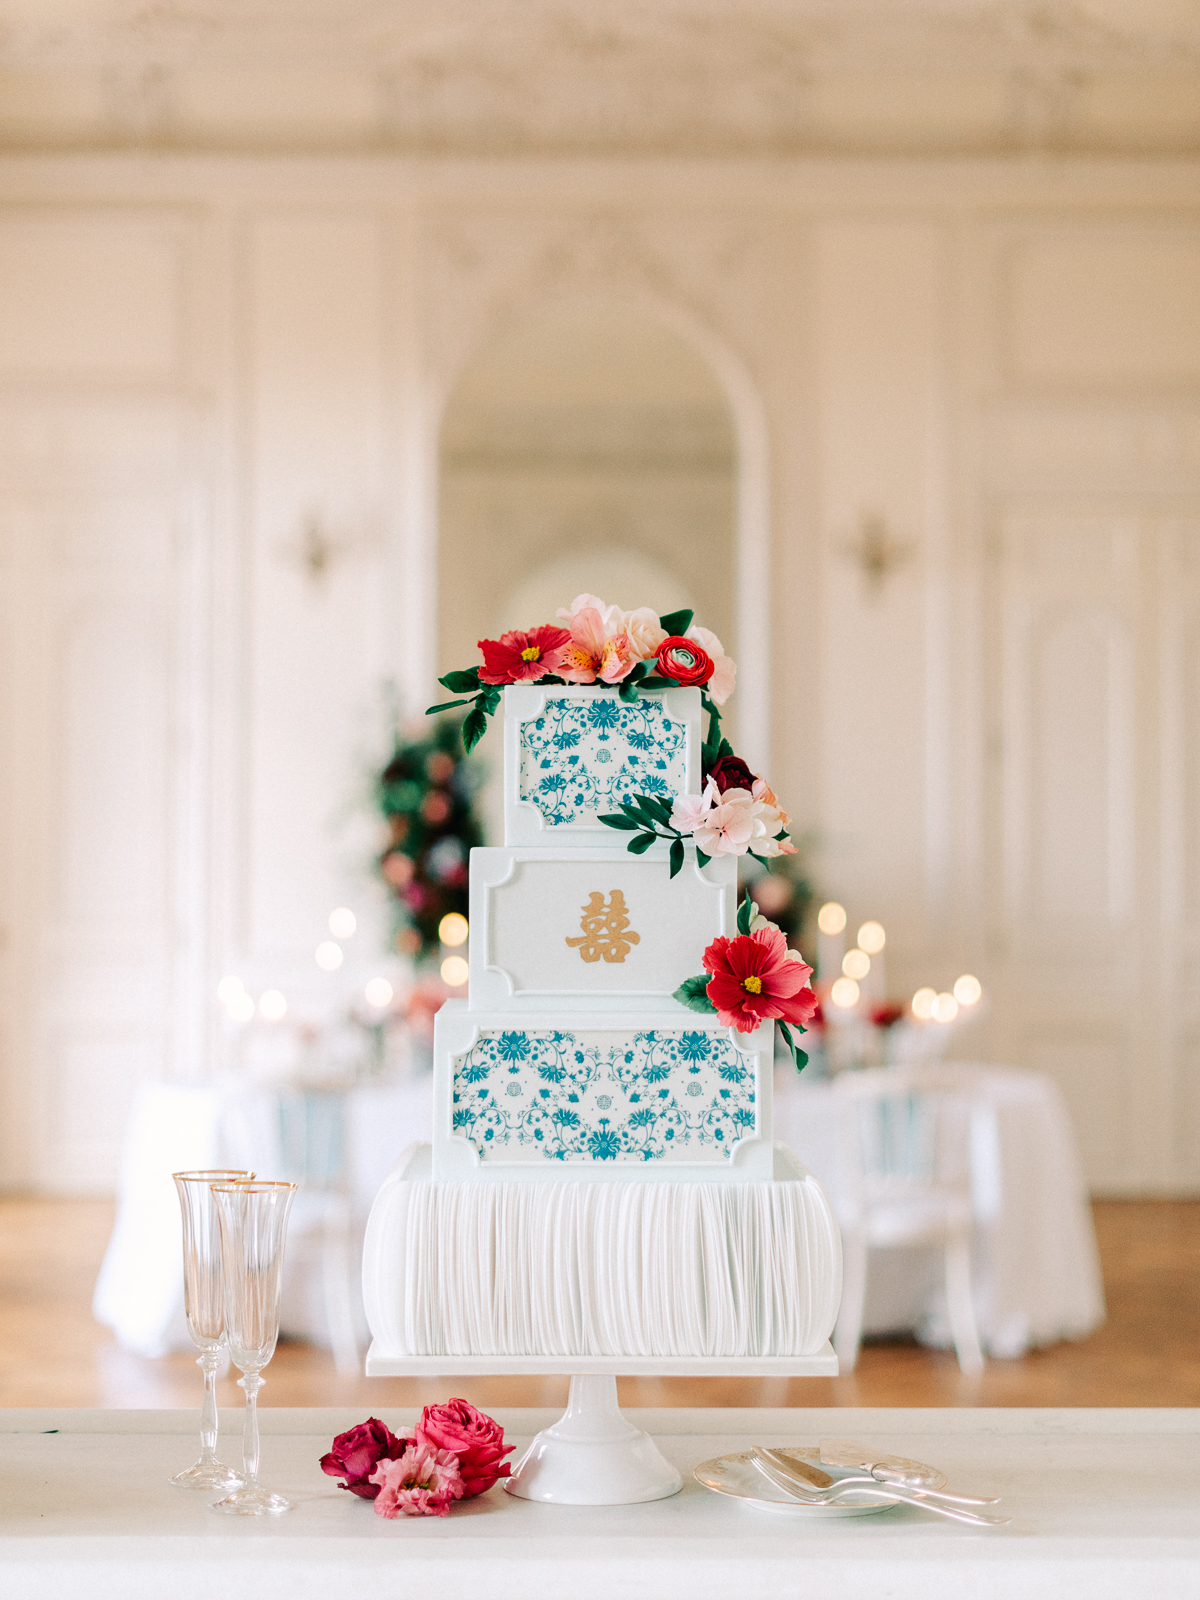 chinese style wedding cake inspiration